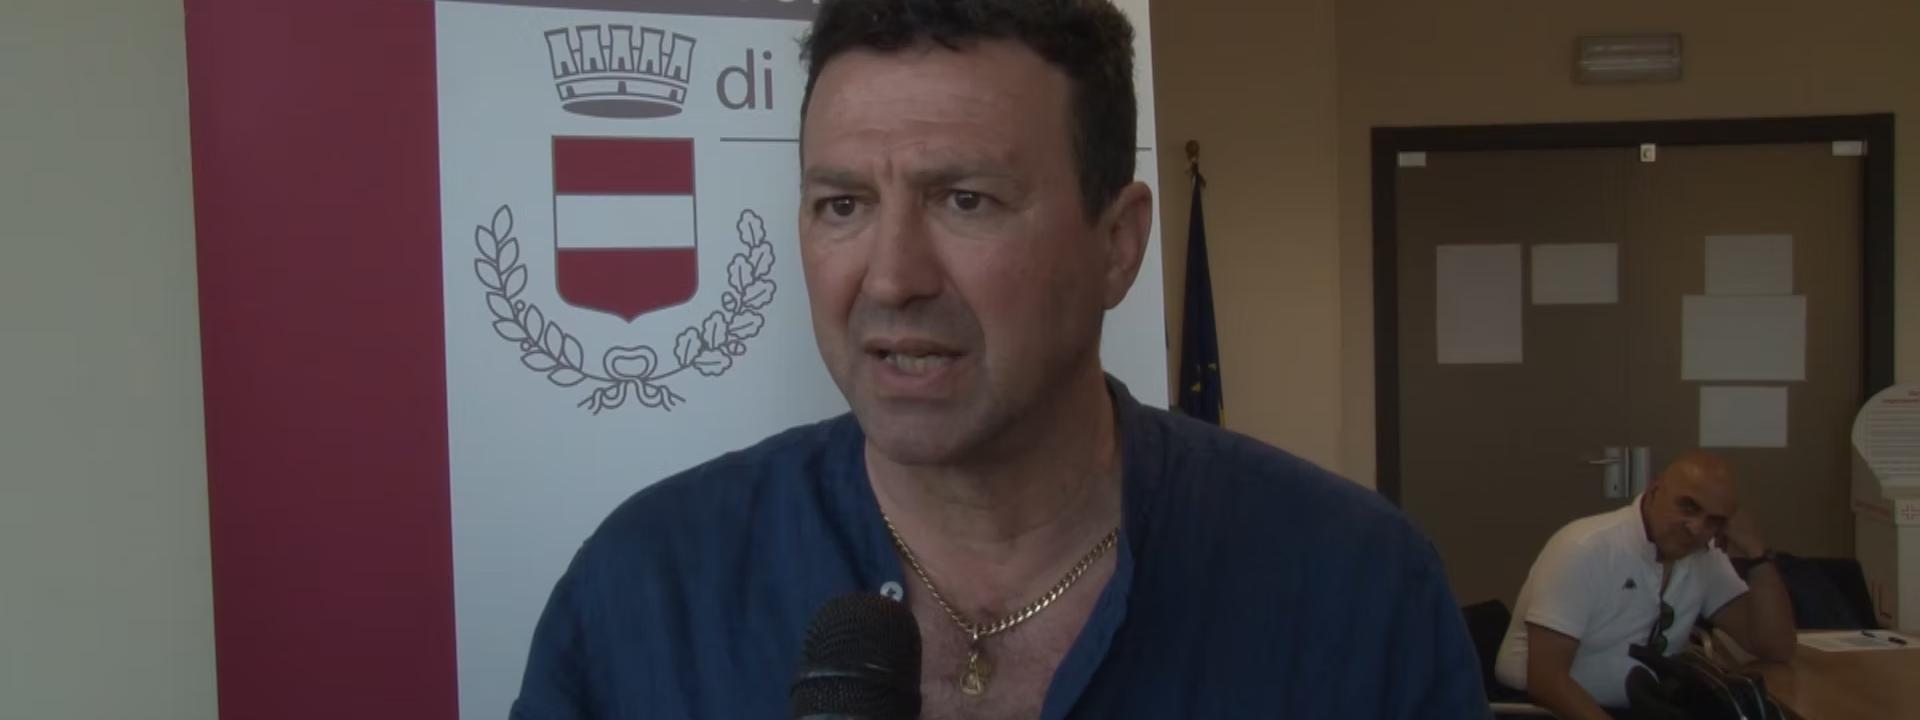 Marche - Tolentino, il nuovo sindaco è Mauro Sclavi